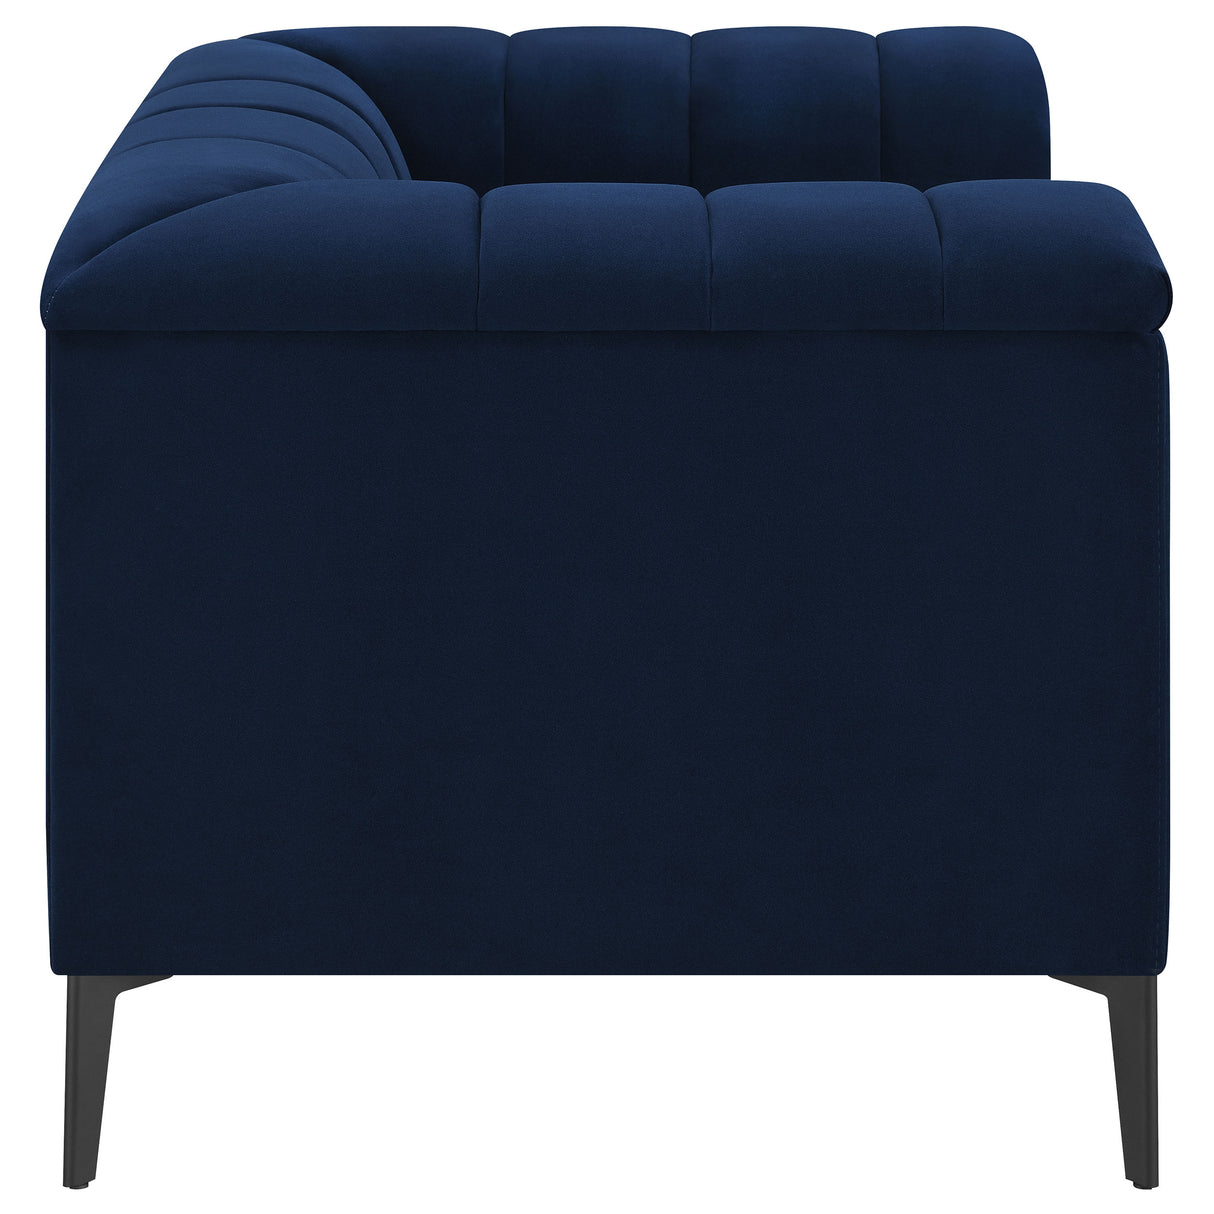 Chair - Chalet Tuxedo Arm Chair Blue